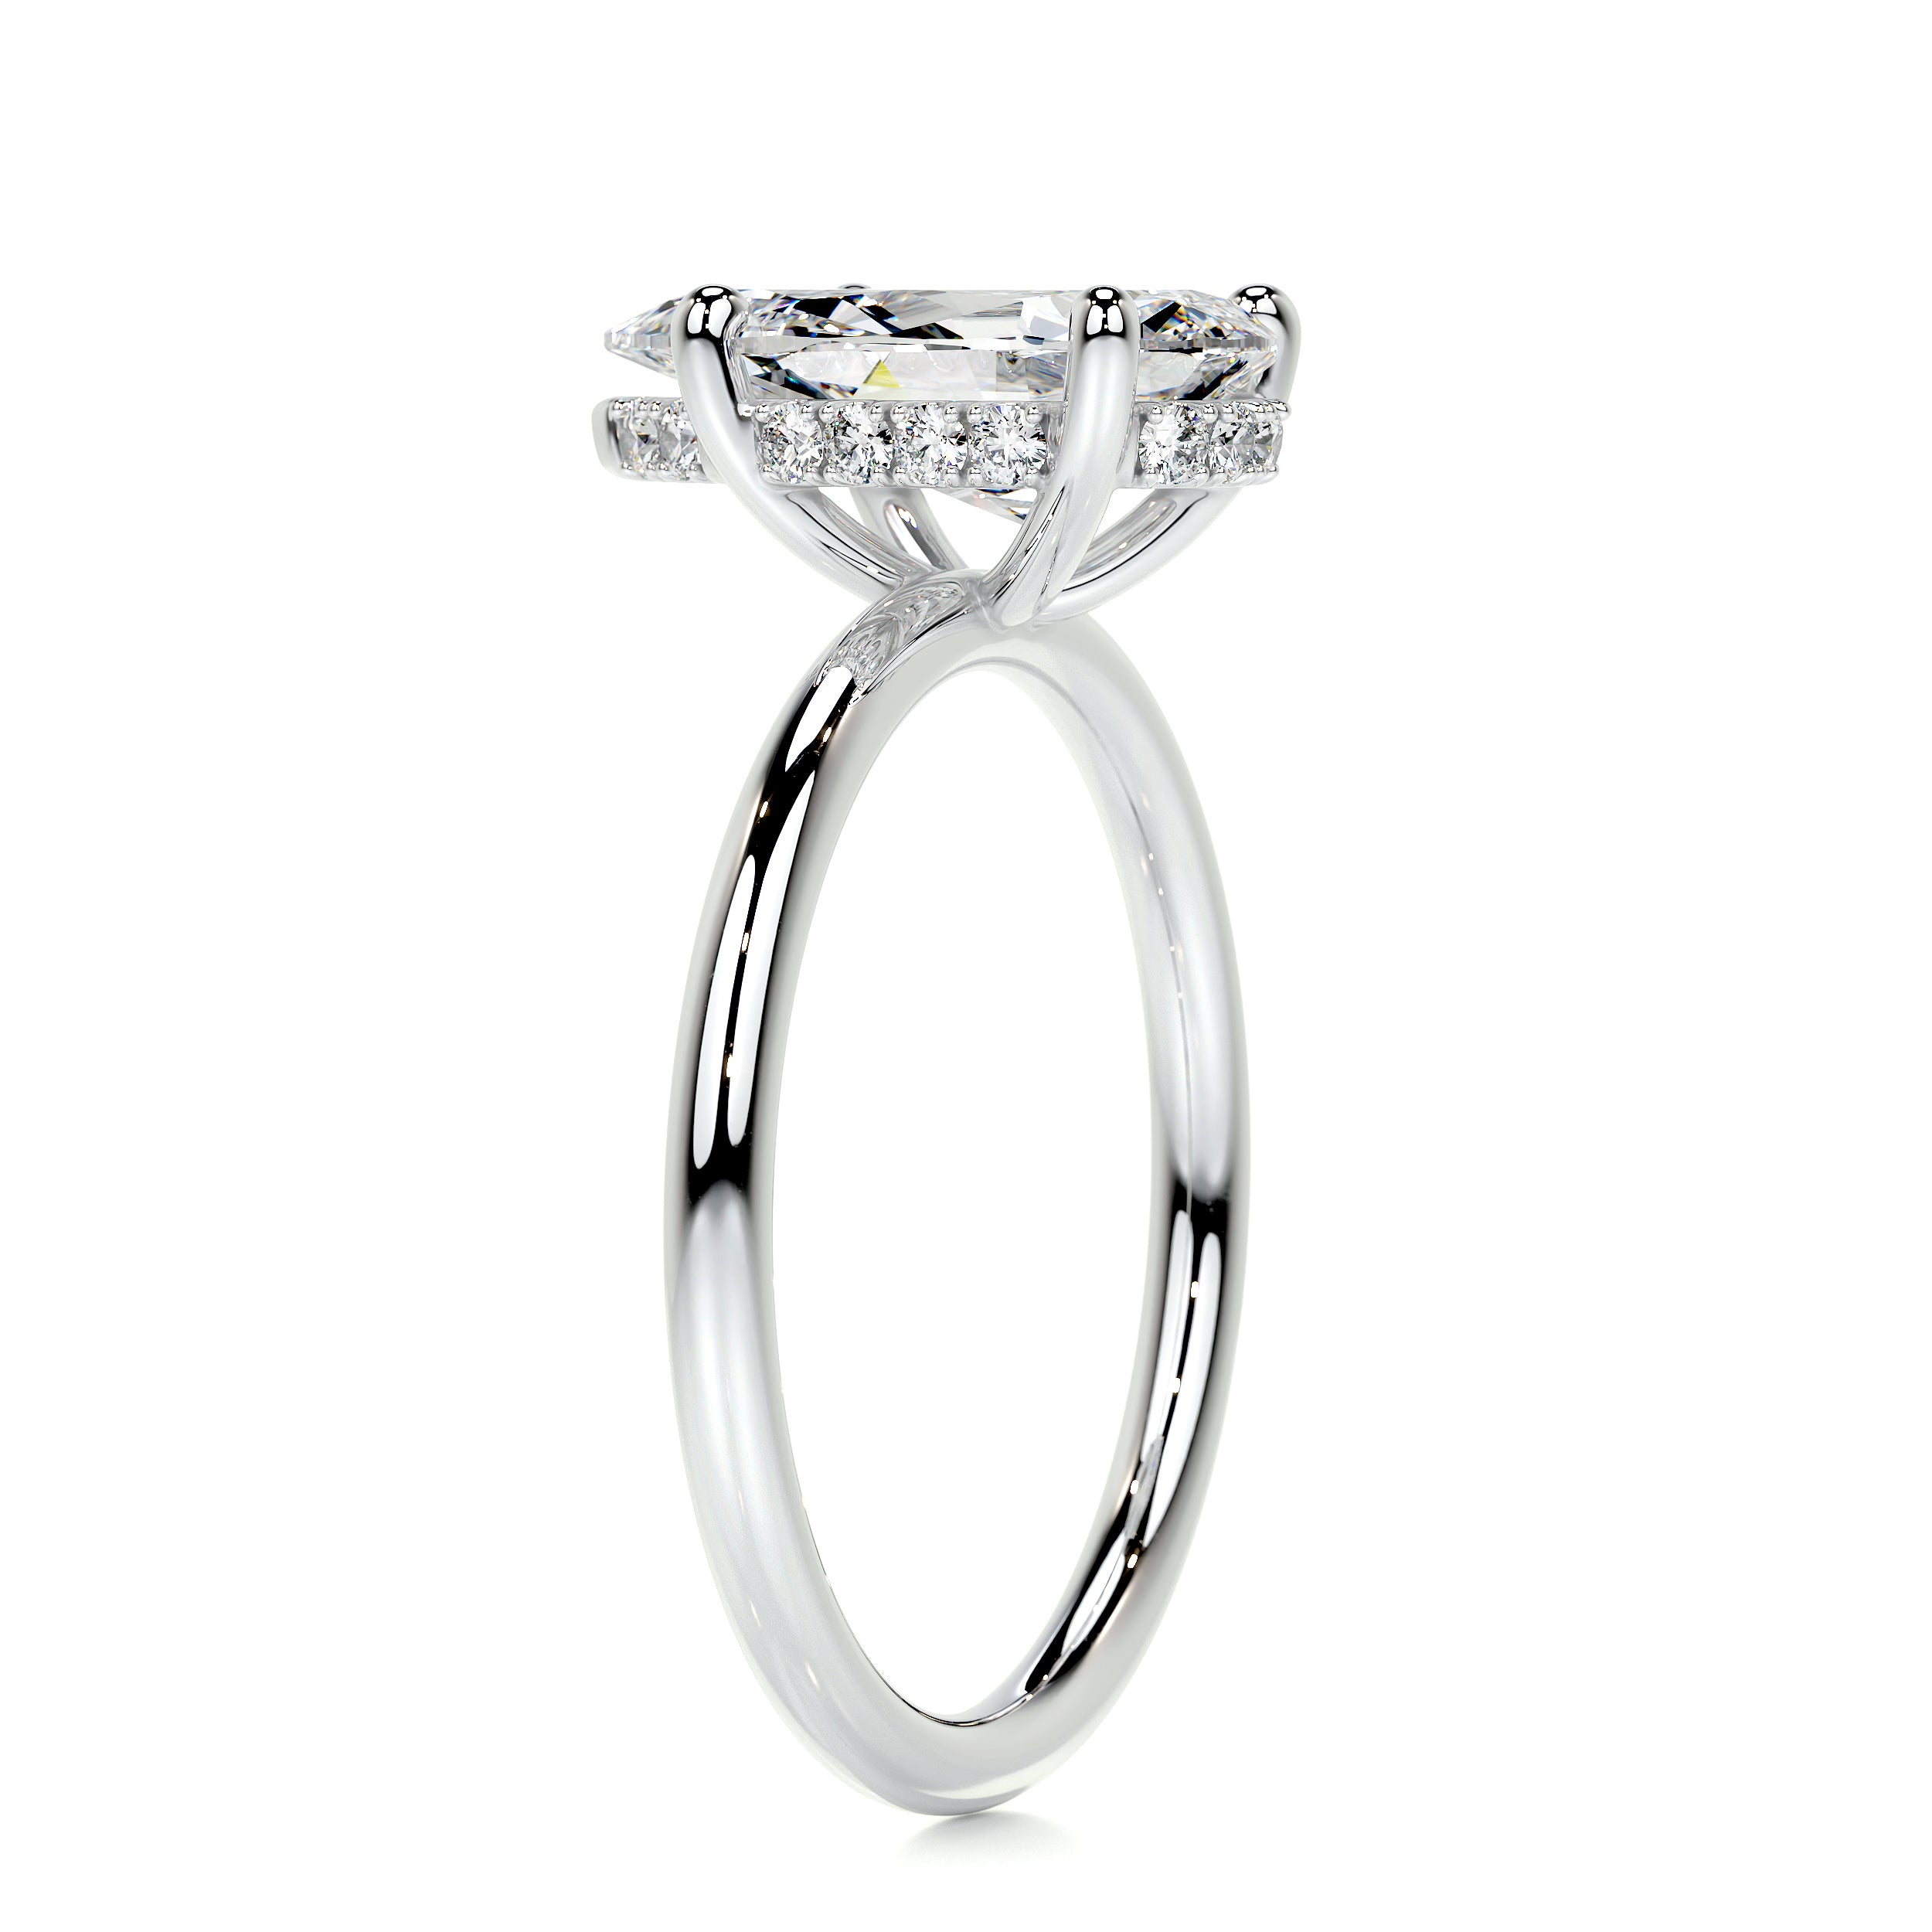 Willow Diamond Engagement Ring   (2.1 Carat) -14K White Gold